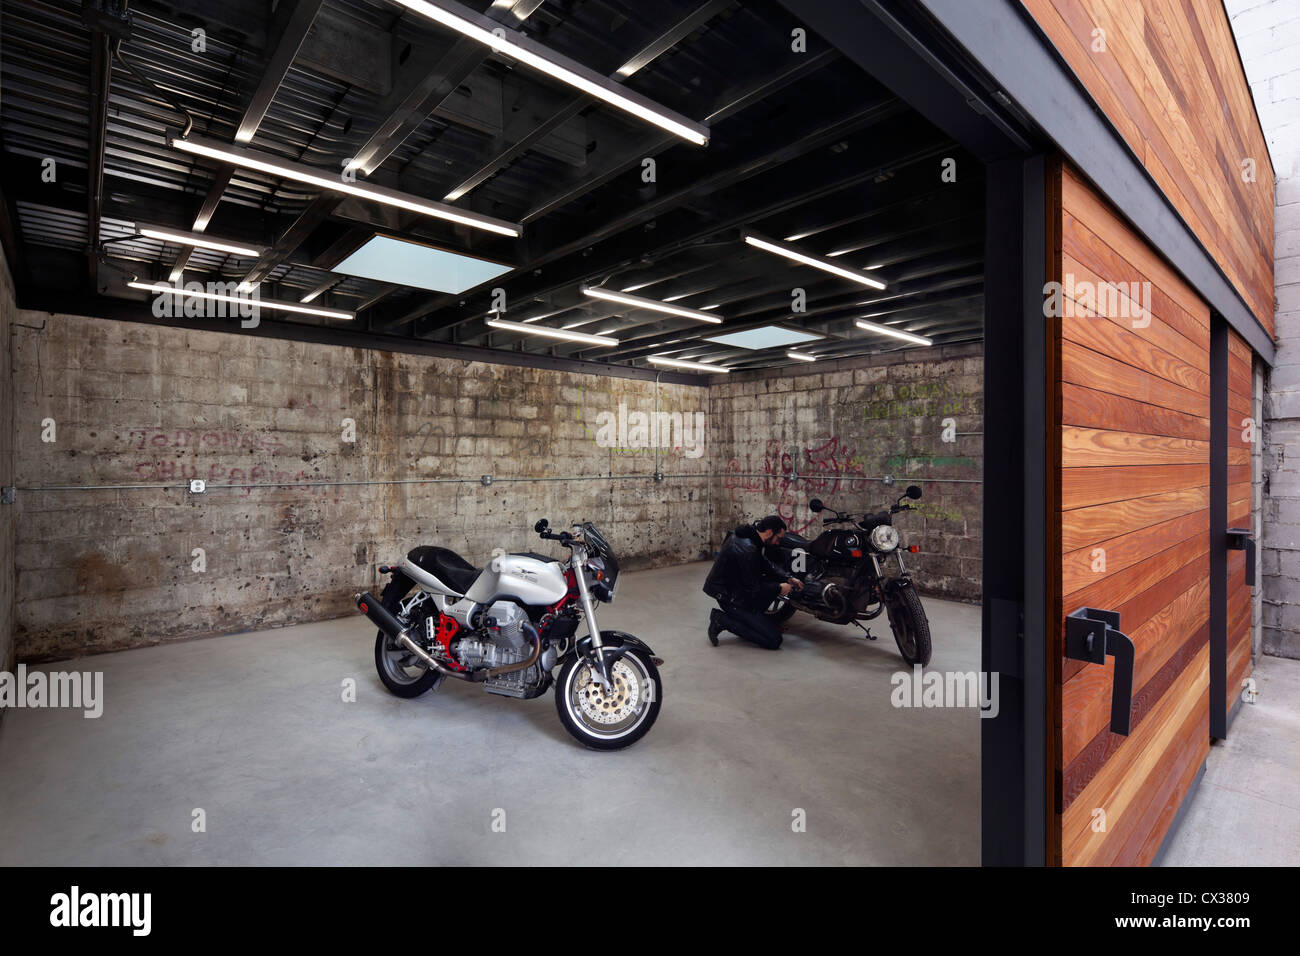 Bushwick Motorrad Garage und Garten, Brooklyn, USA. Architekt